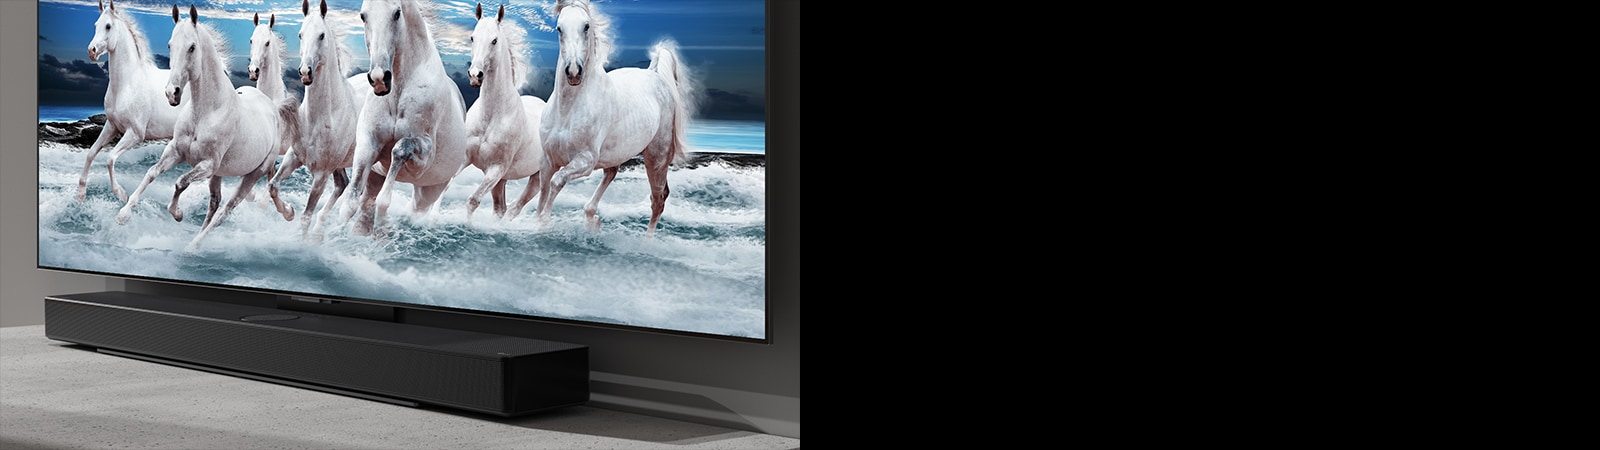 La barre de son LG SC9S et le téléviseur sont placés sur la table blanche et 7 chevaux blancs apparaissent sur le téléviseur.